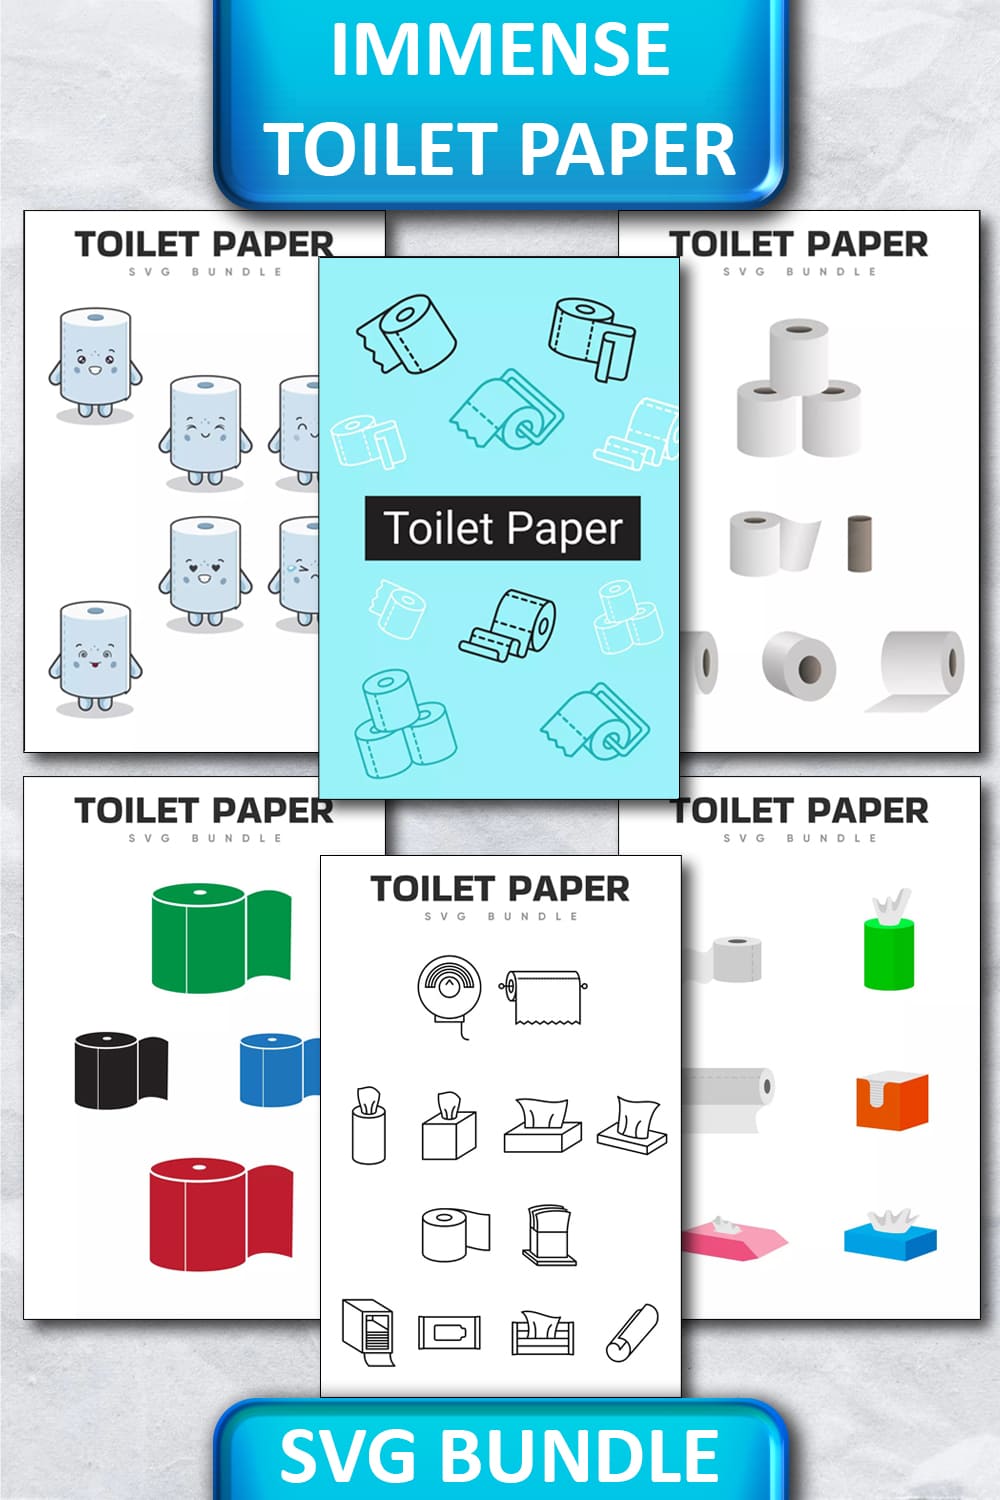 Immense Toilet Paper SVG Bundle Pinterest.